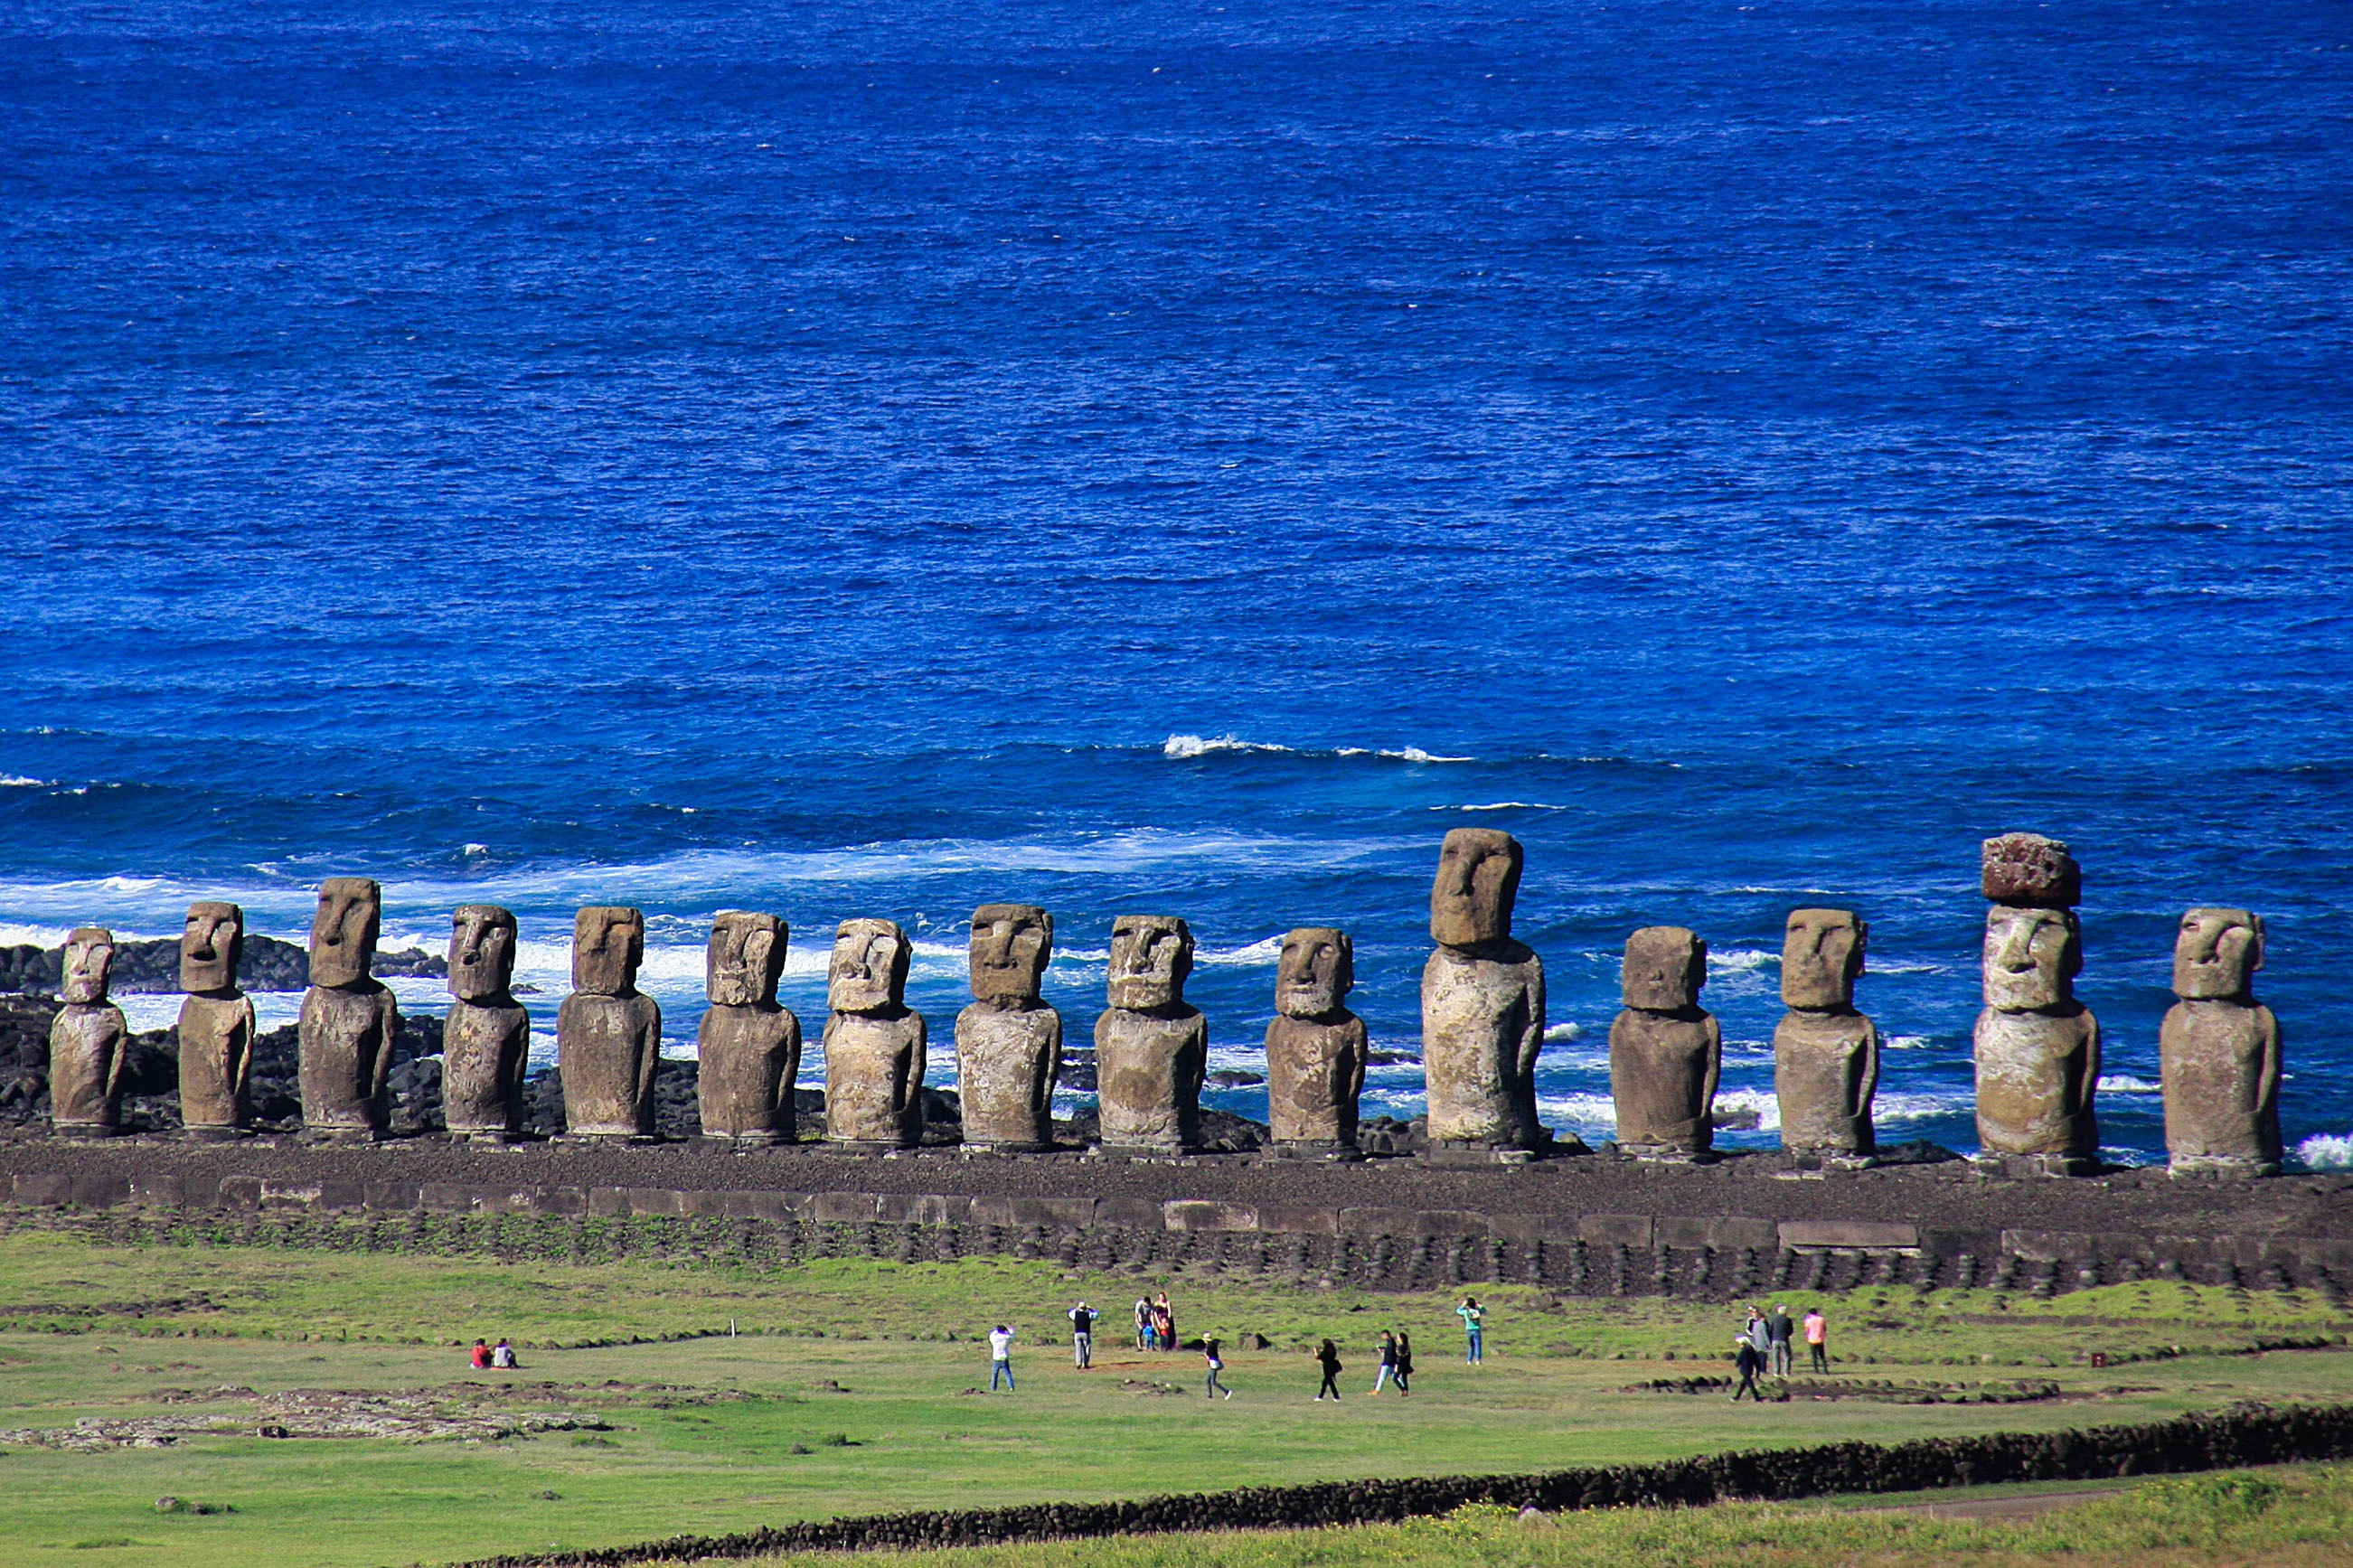 Las estatuas de piedra, a la vez estoicas y seductoras, han mantenido durante mucho tiempo los espíritus y secretos del antiguo pueblo Rapa Nui
(Europa Press)